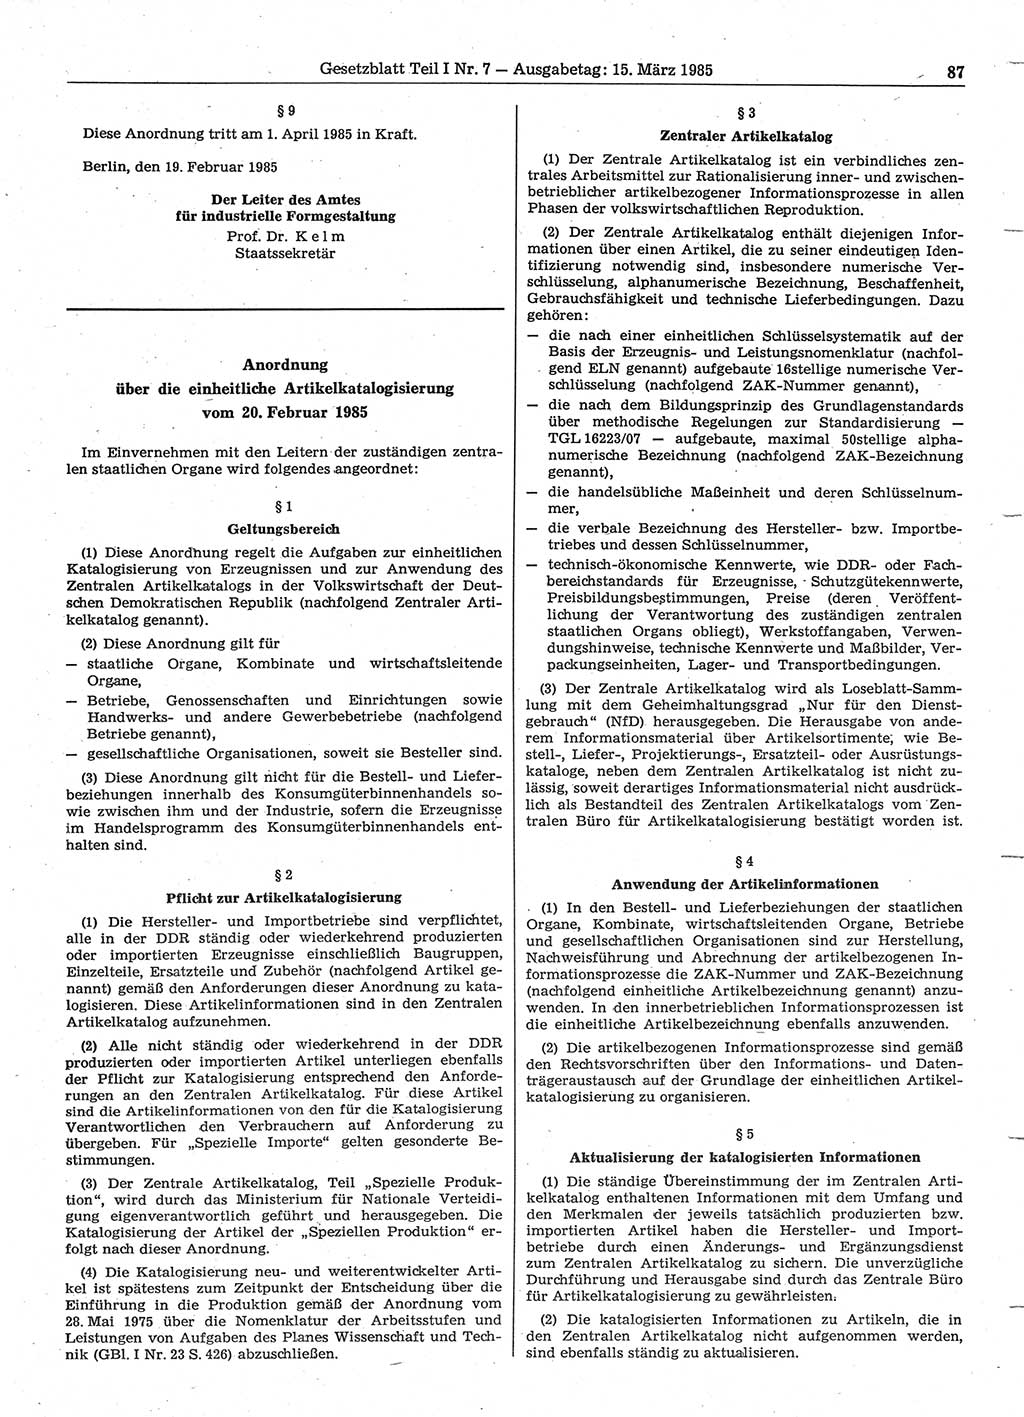 Gesetzblatt (GBl.) der Deutschen Demokratischen Republik (DDR) Teil Ⅰ 1985, Seite 87 (GBl. DDR Ⅰ 1985, S. 87)